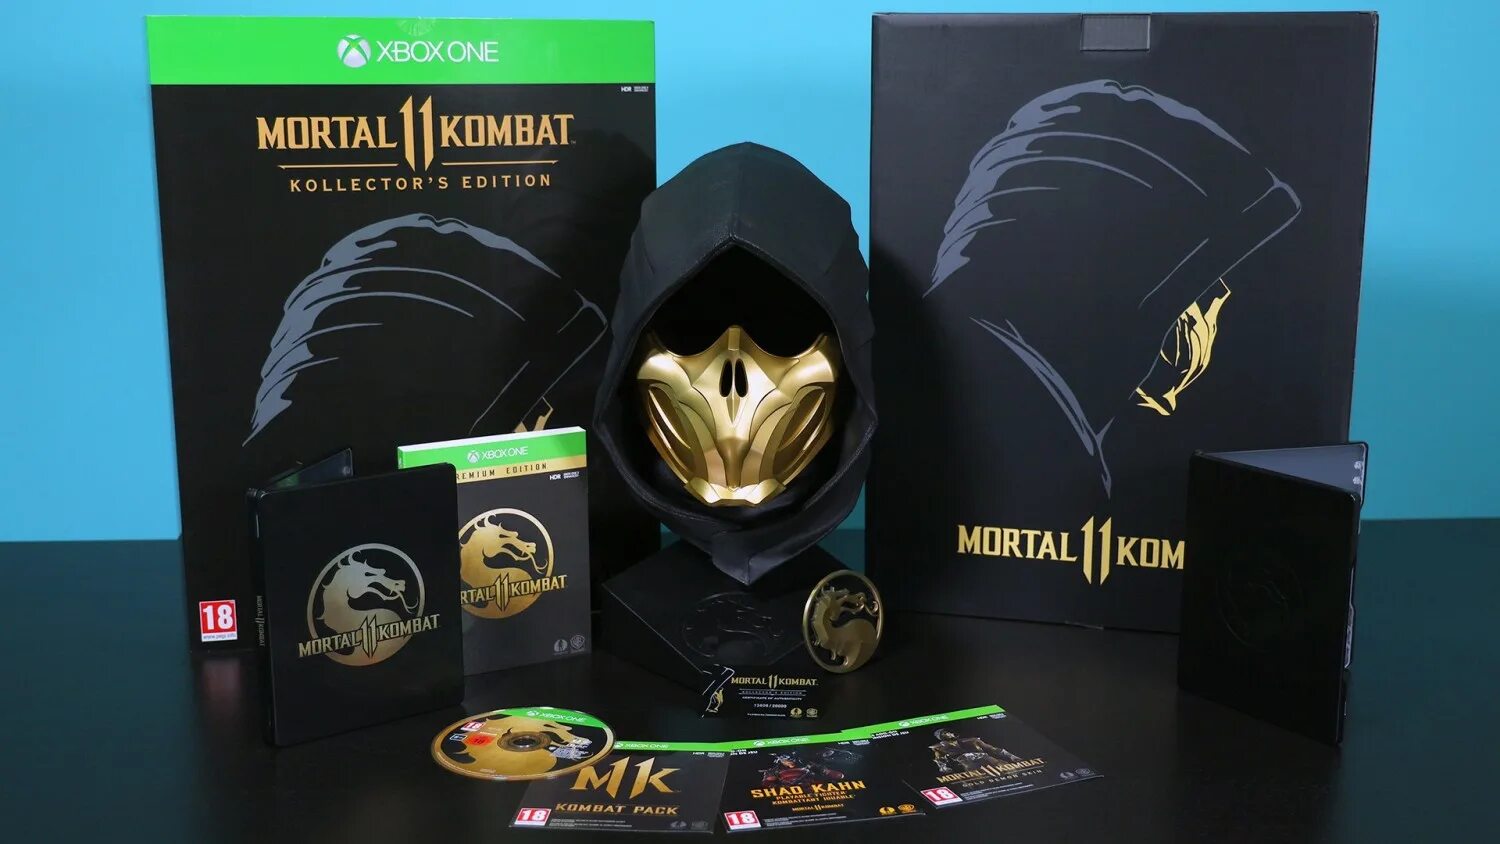 Ps5 mortal kombat купить. Mortal Kombat 11 коллекционное издание. Mortal Kombat 11 Ultimate Edition Limited Edition. Mortal Kombat 11 Ultimate ps4 Collector's Edition. Mortal Kombat 11 Ultimate Limited Edition Xbox.